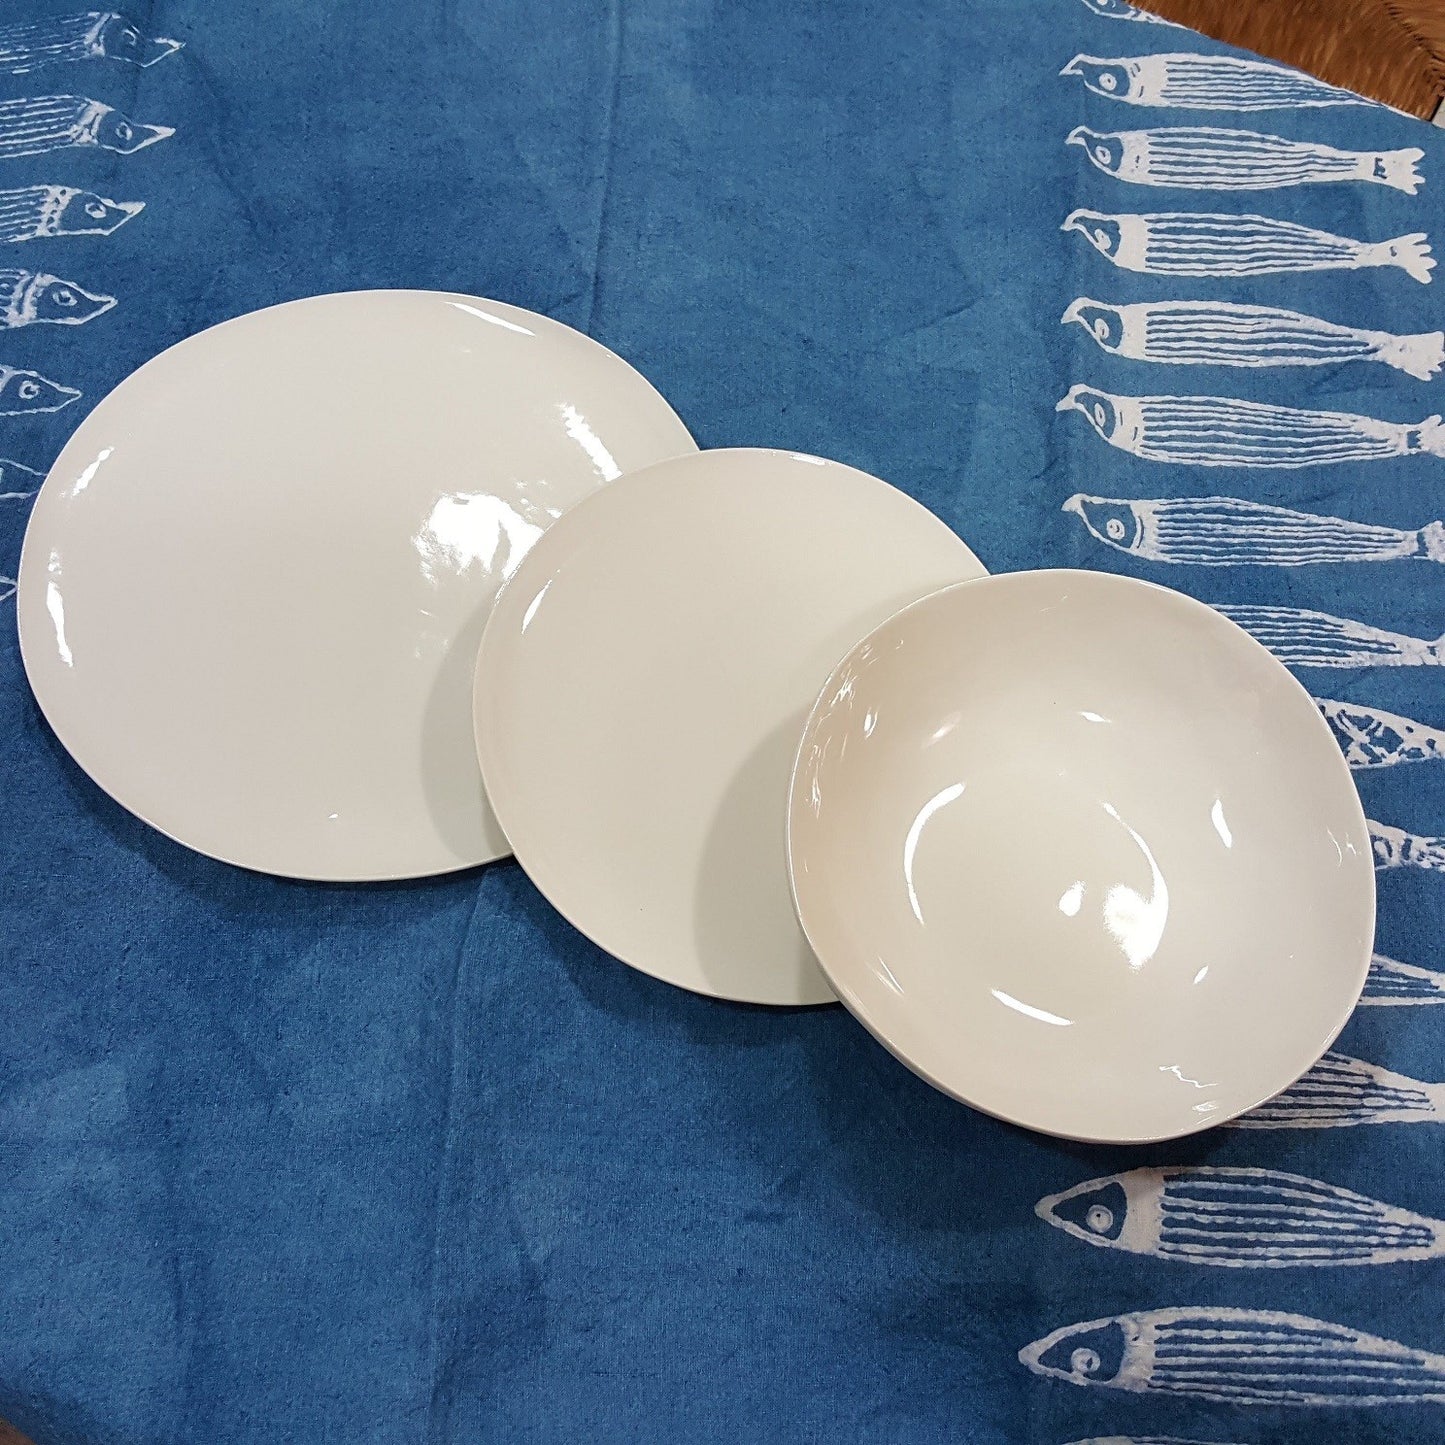 Plates set in shiny white porcelain handmade